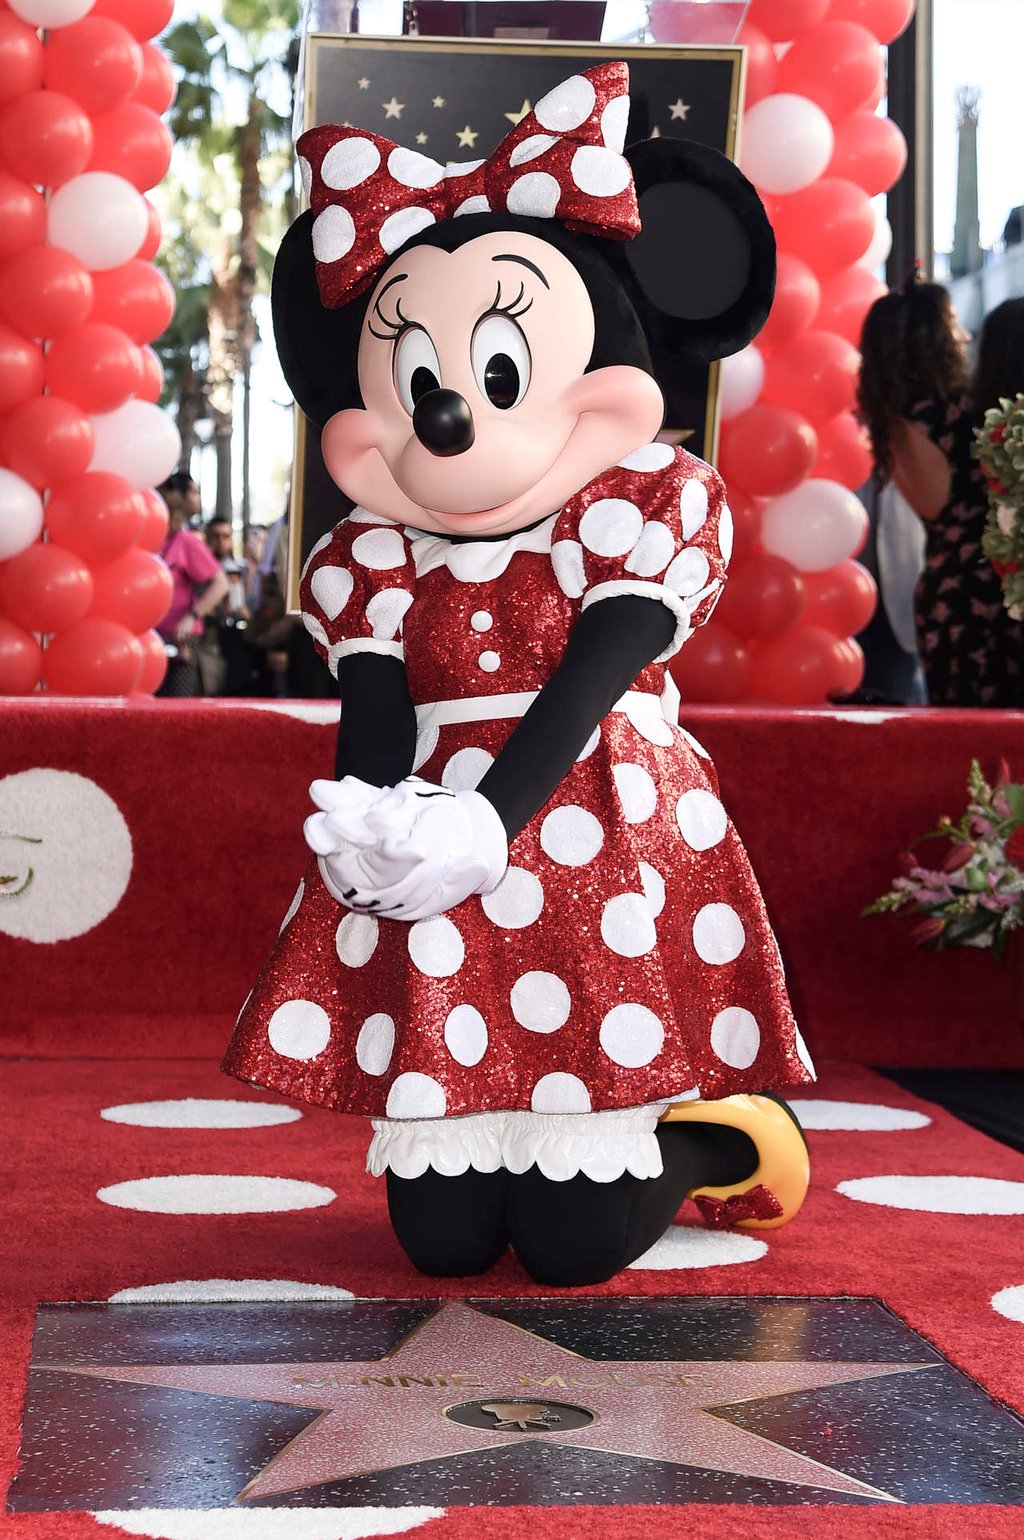 Minnie Mouse devela su estrella en Hollywood, Katy Perry la acompañó